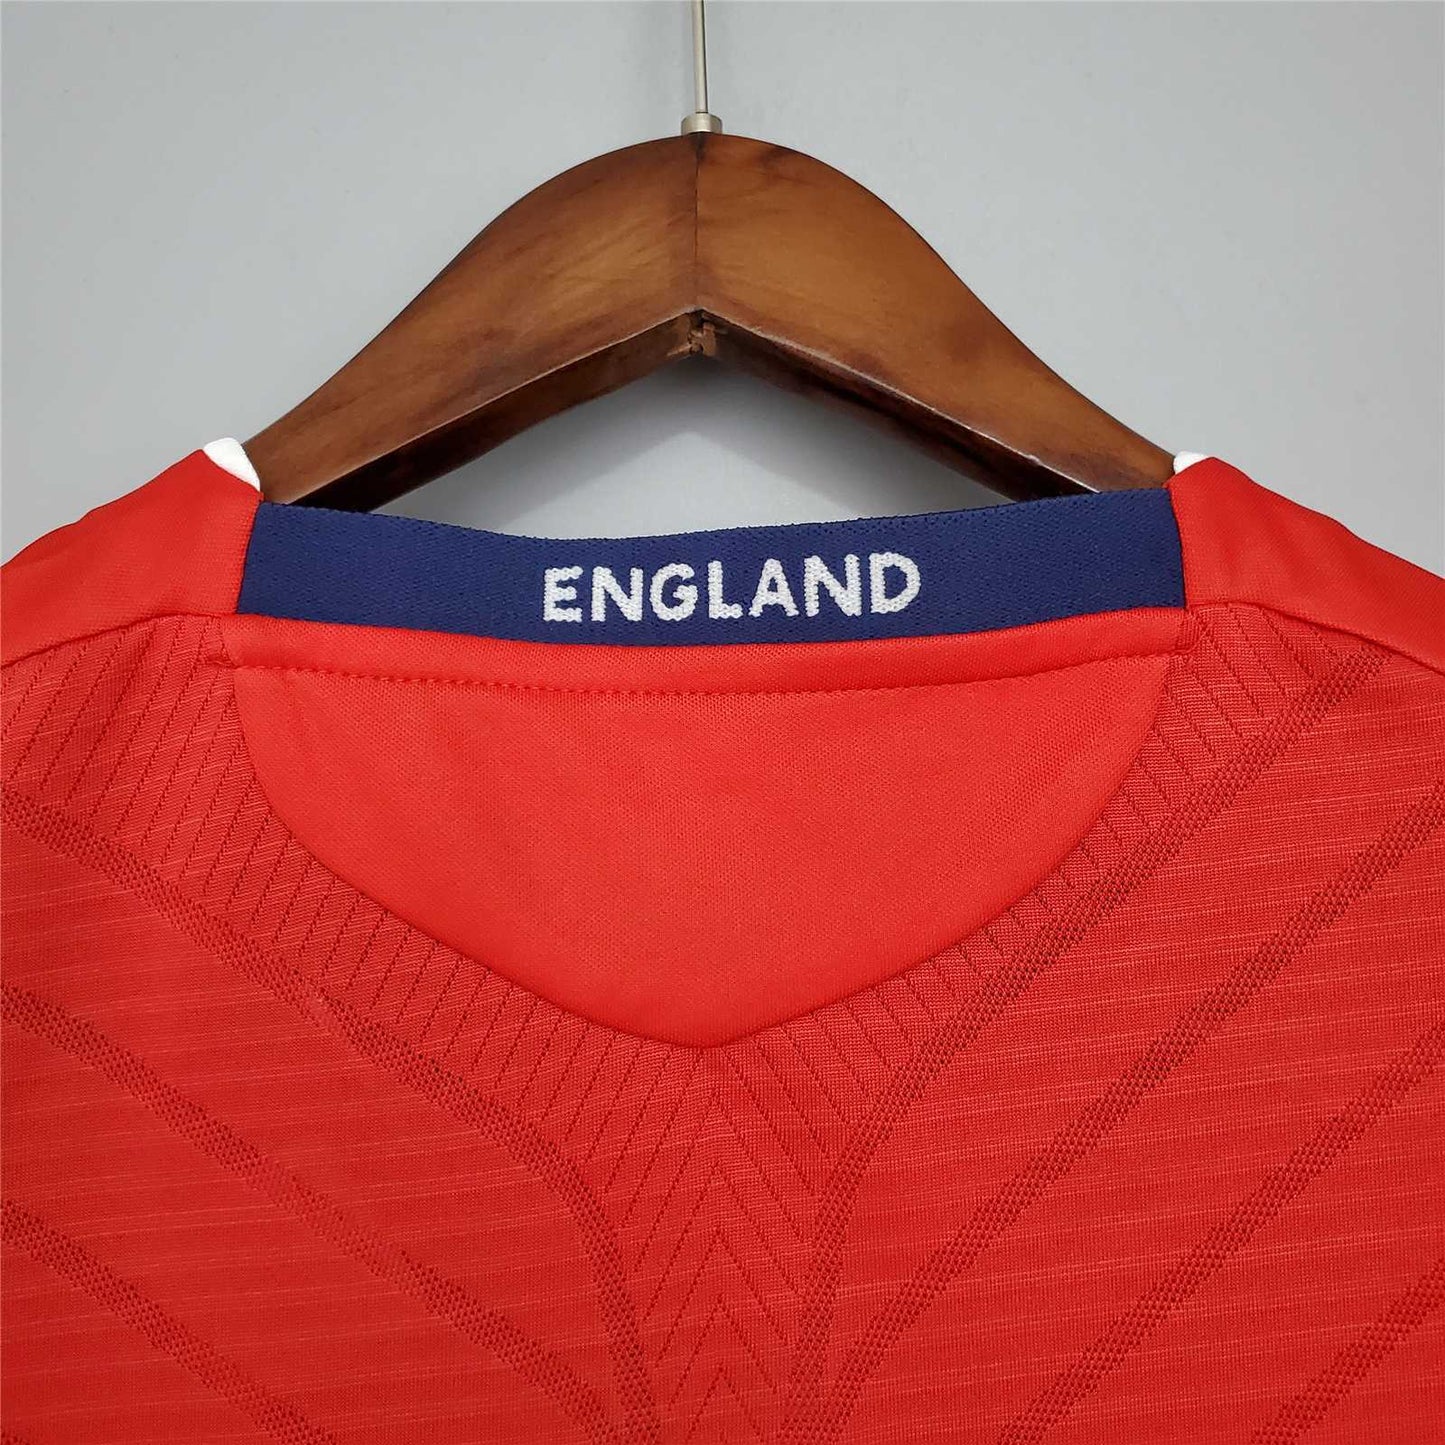 England 2008 Away Shirt